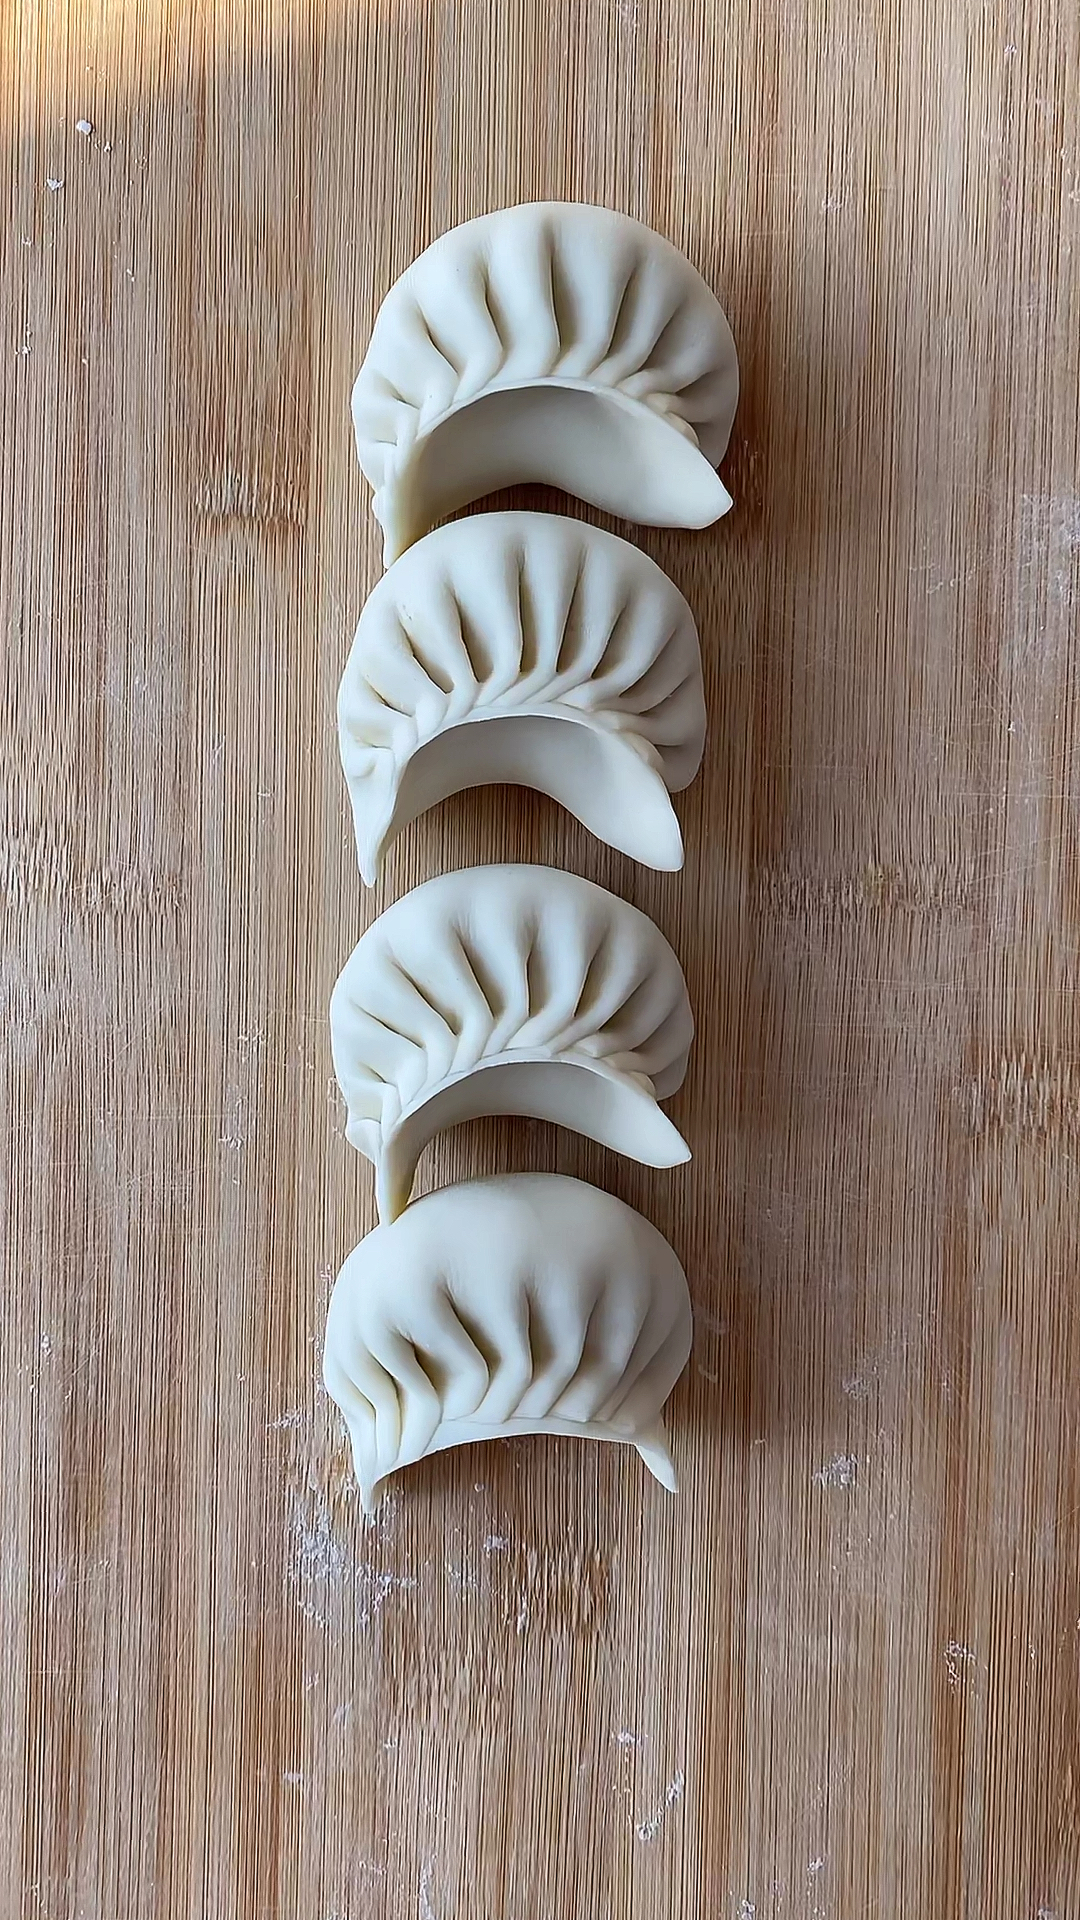 月牙形饺子包法图片